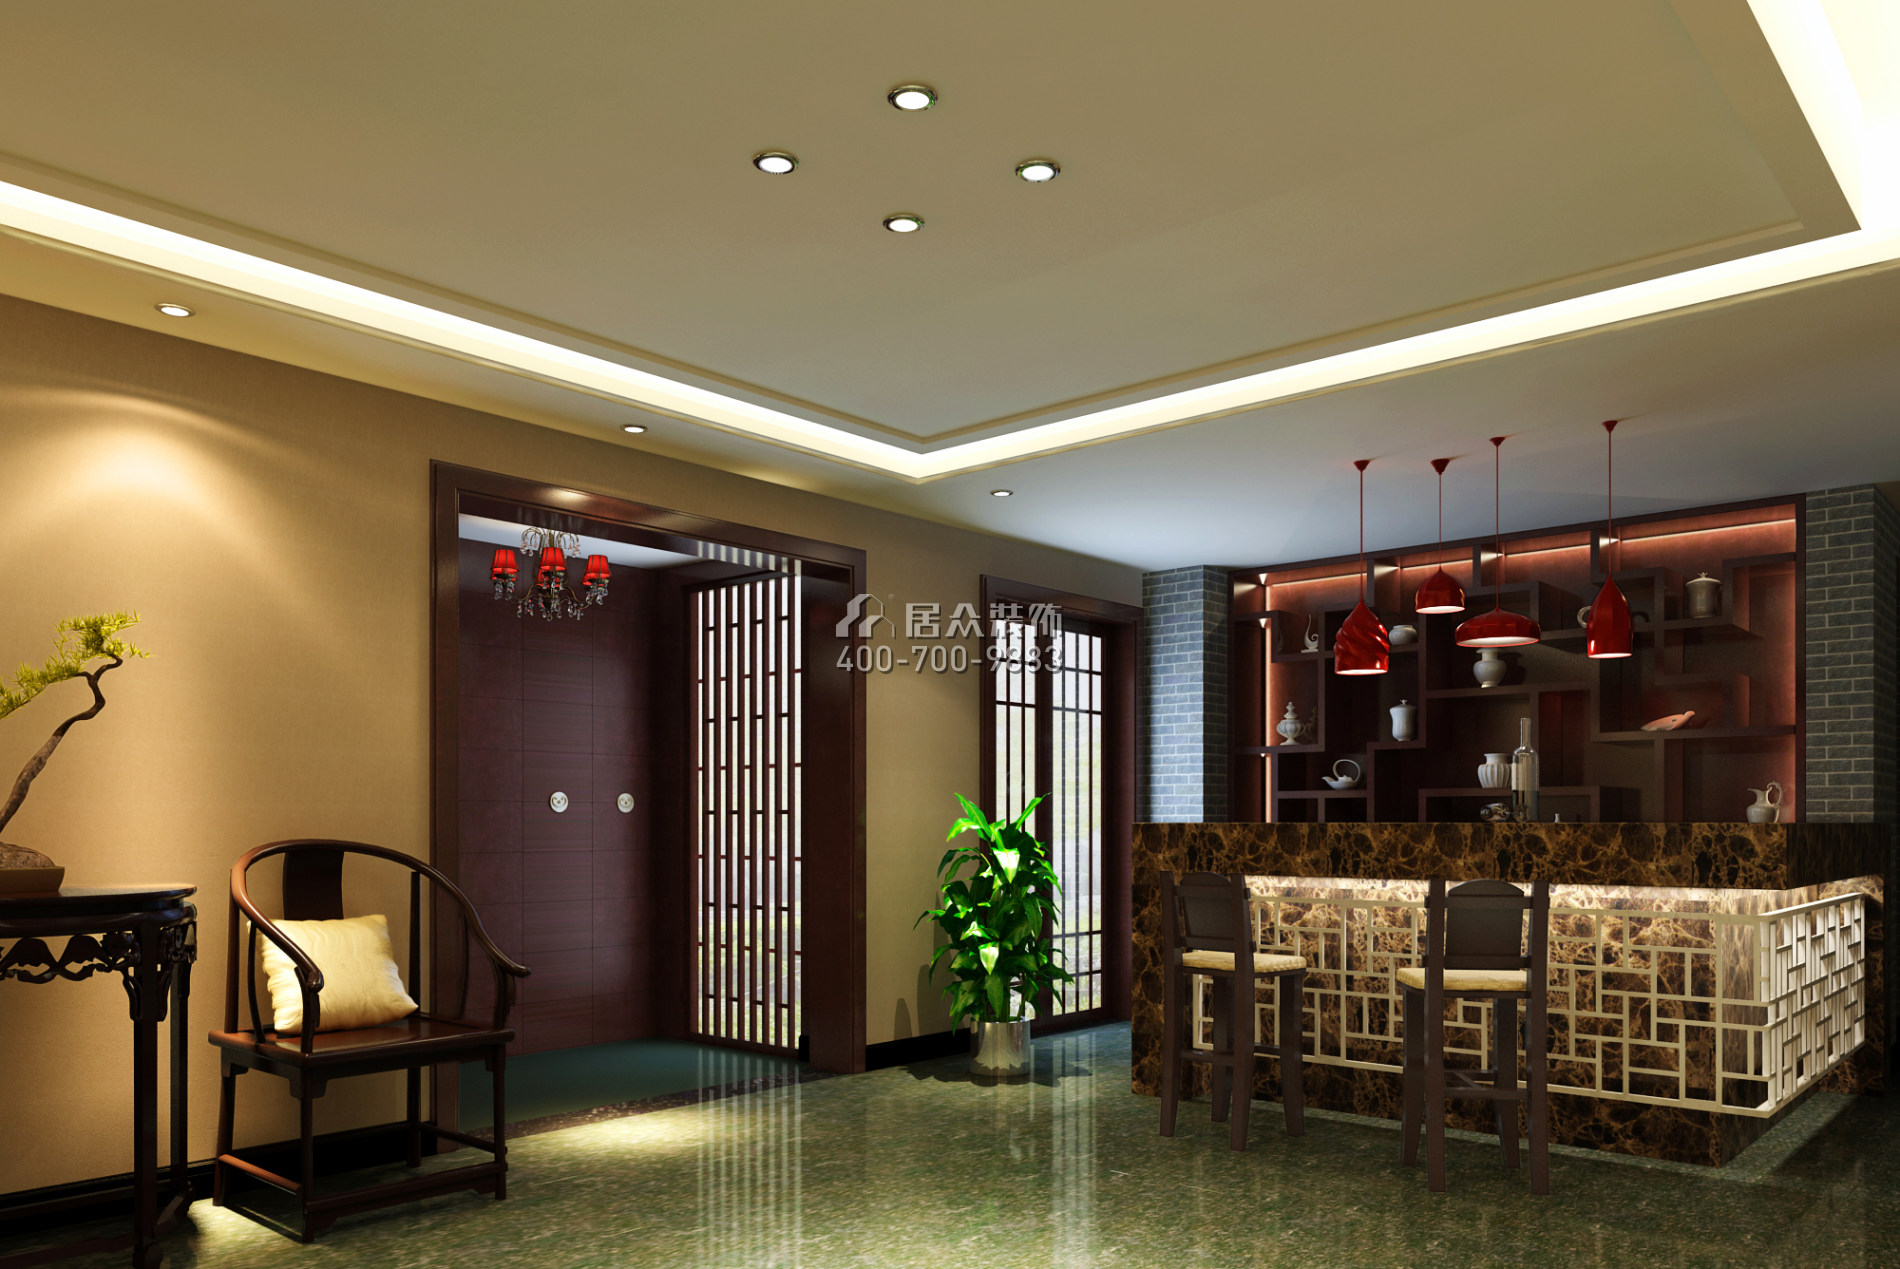 藏龍195平方米中式風格平層戶型客廳裝修效果圖